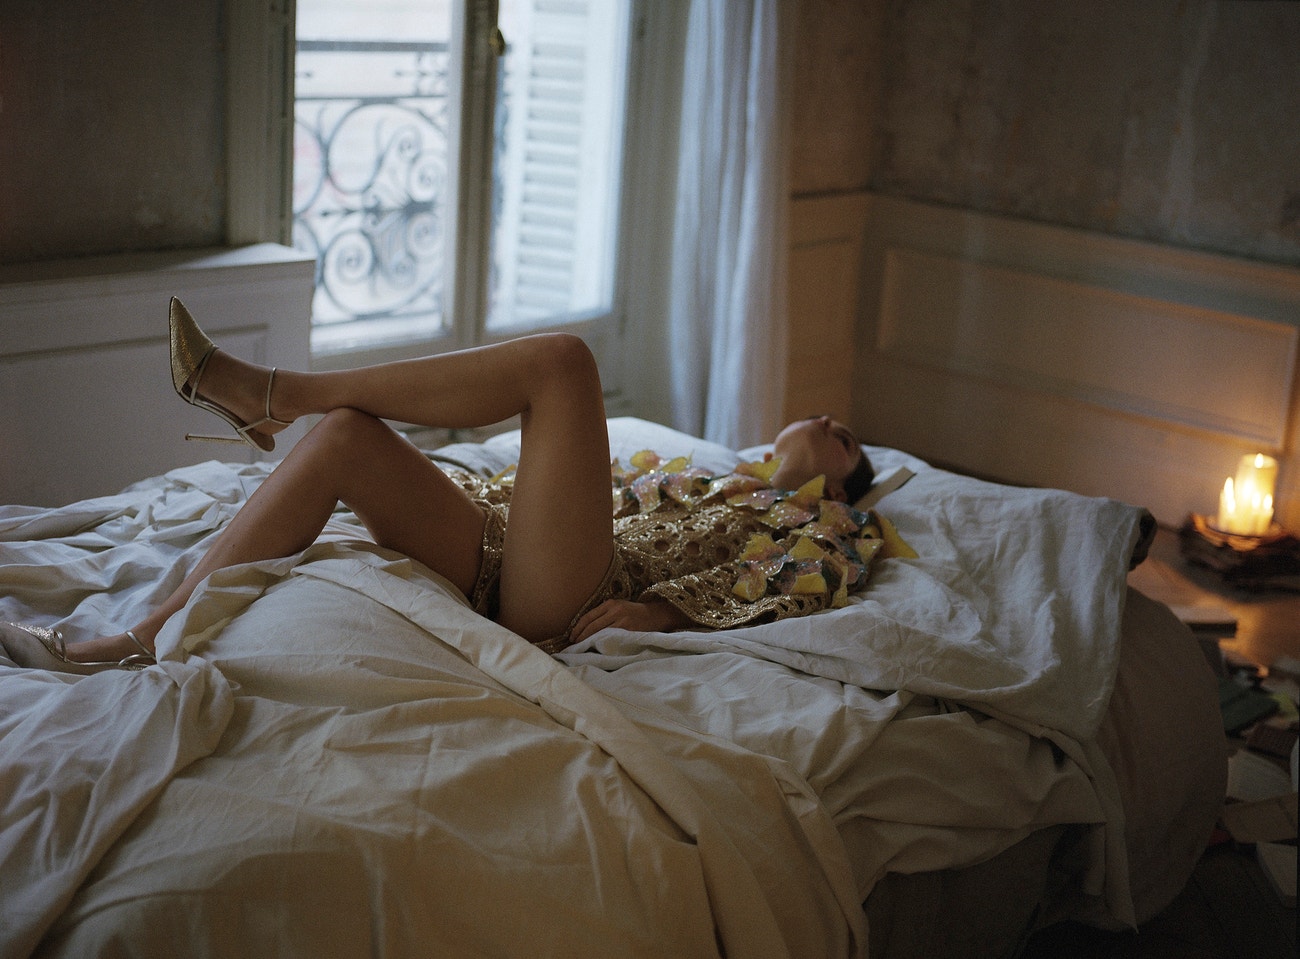 Autor: Thibault‐Théodore Babin for Vogue CS